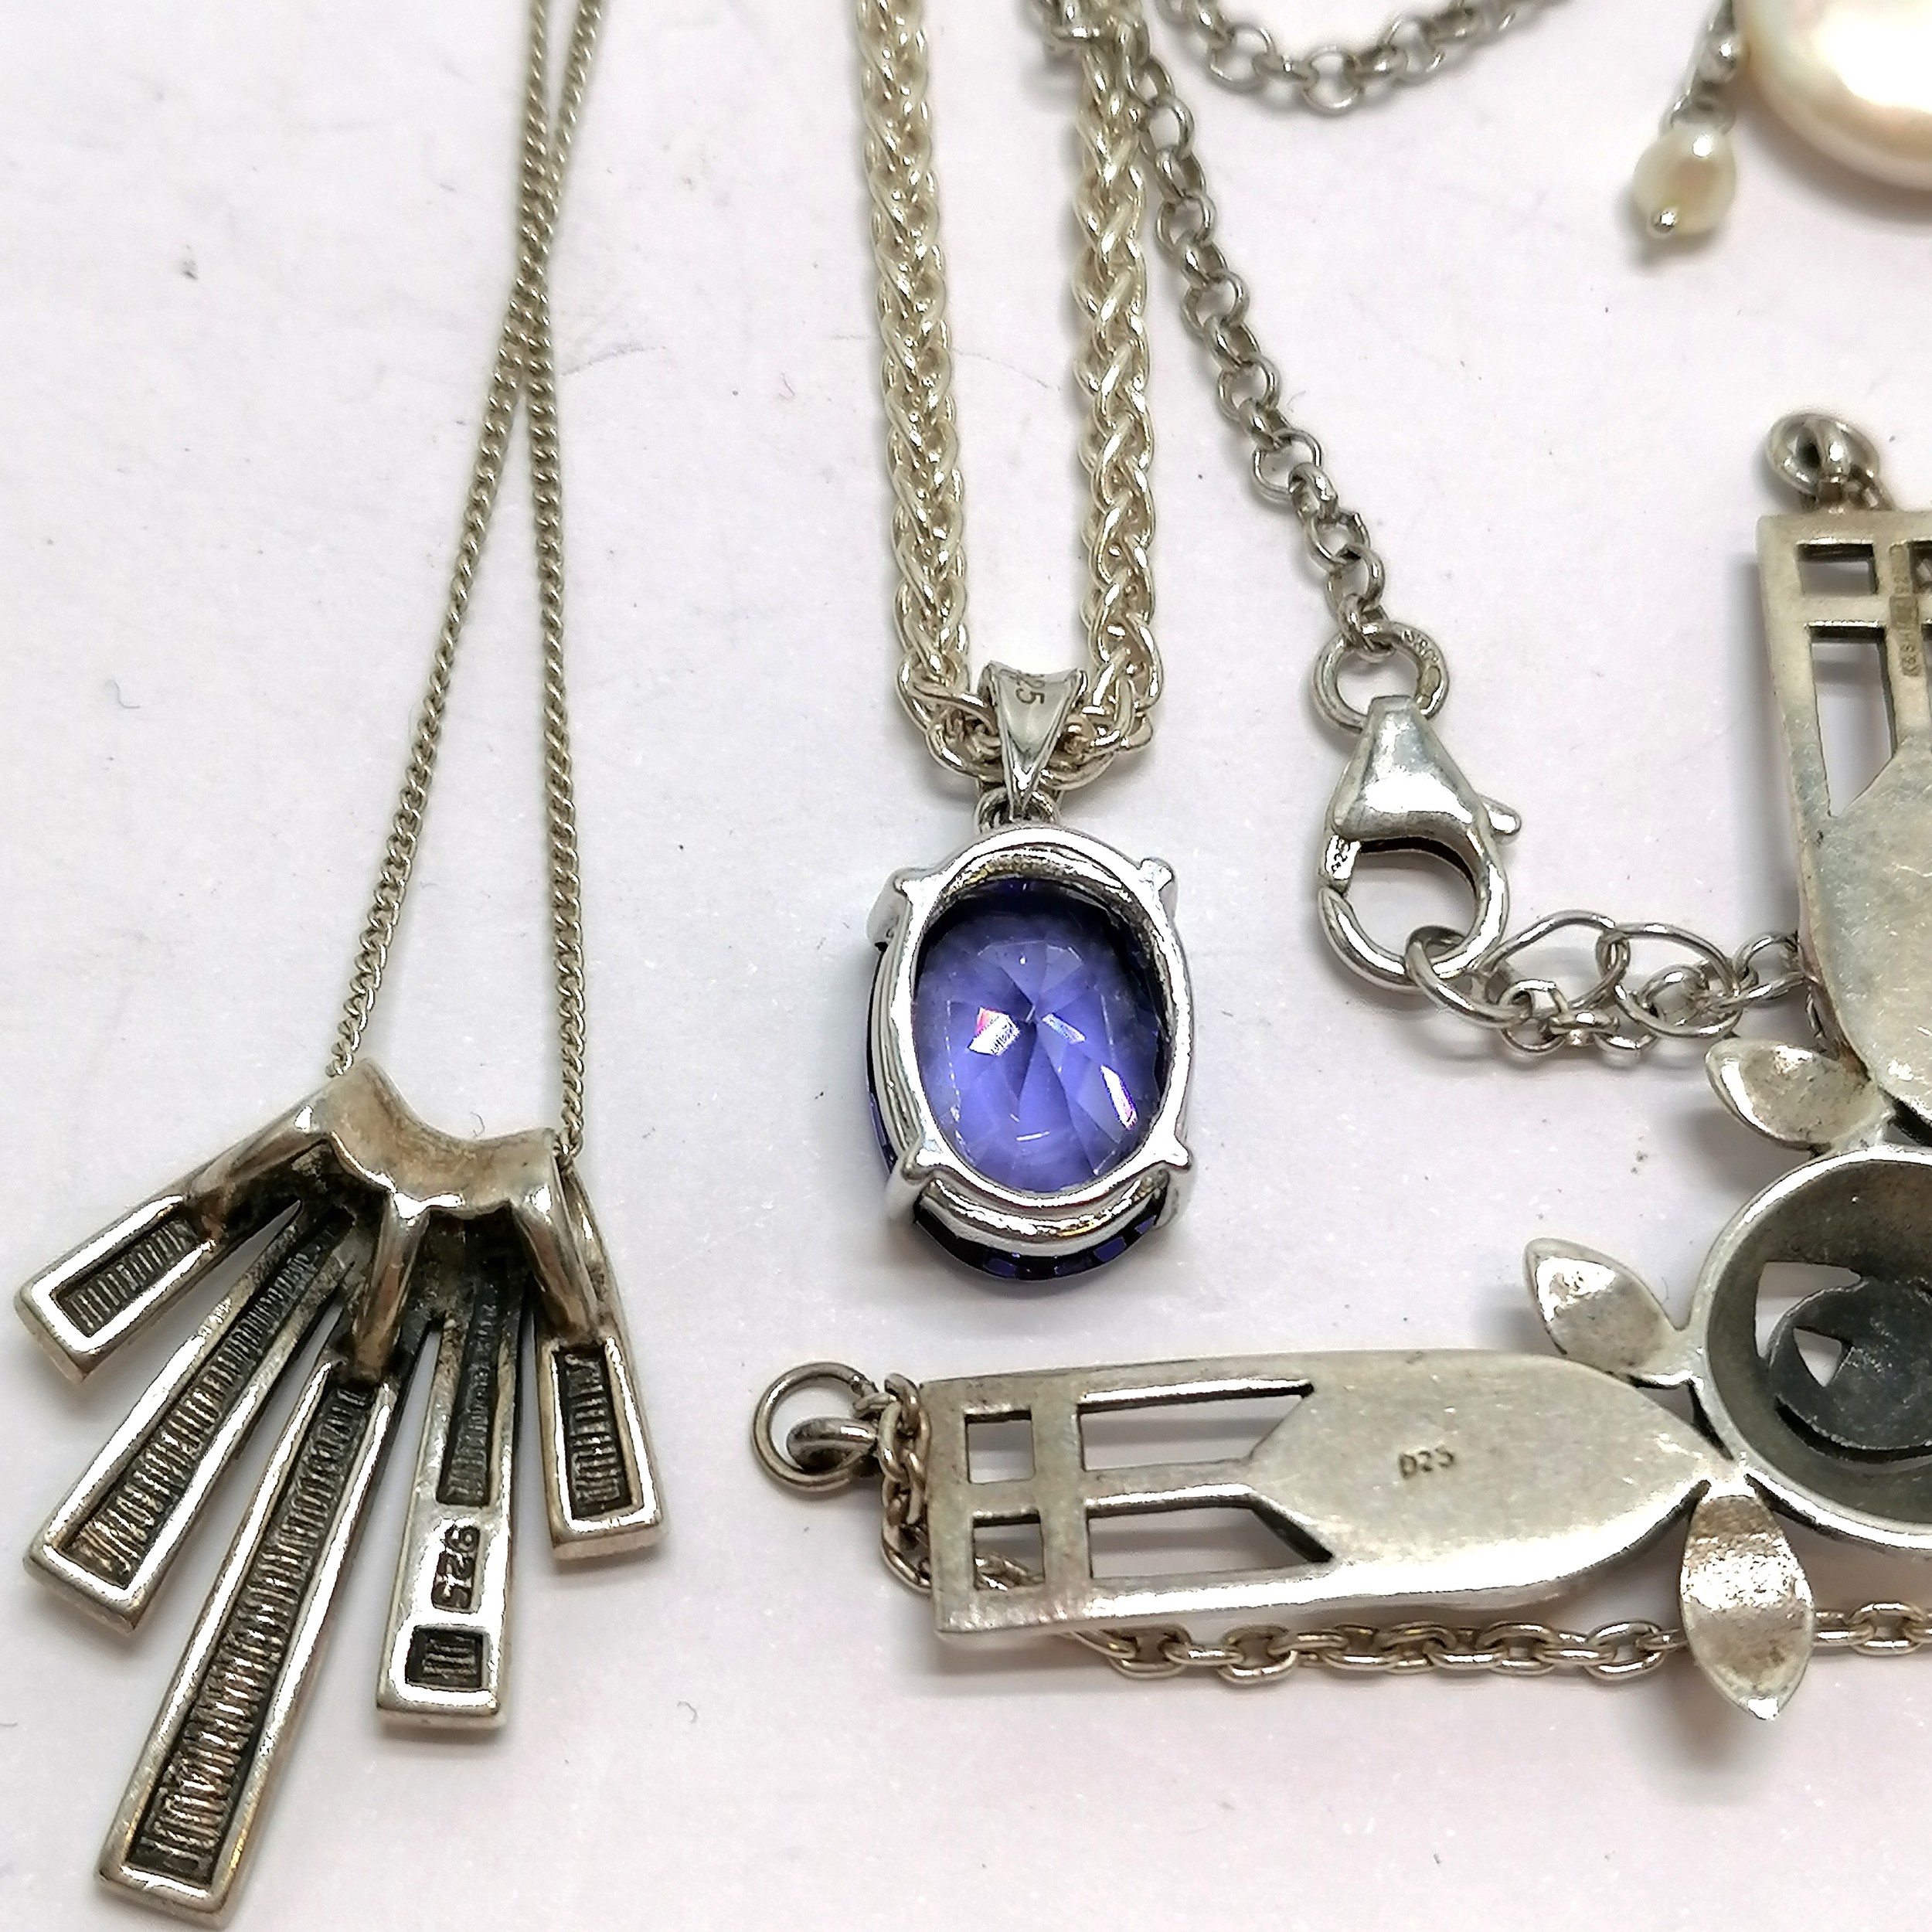 4 x silver necklaces inc Art Nouveau design by K&SH, purple stone set on a 42cm chain, pearl etc - - Image 2 of 5